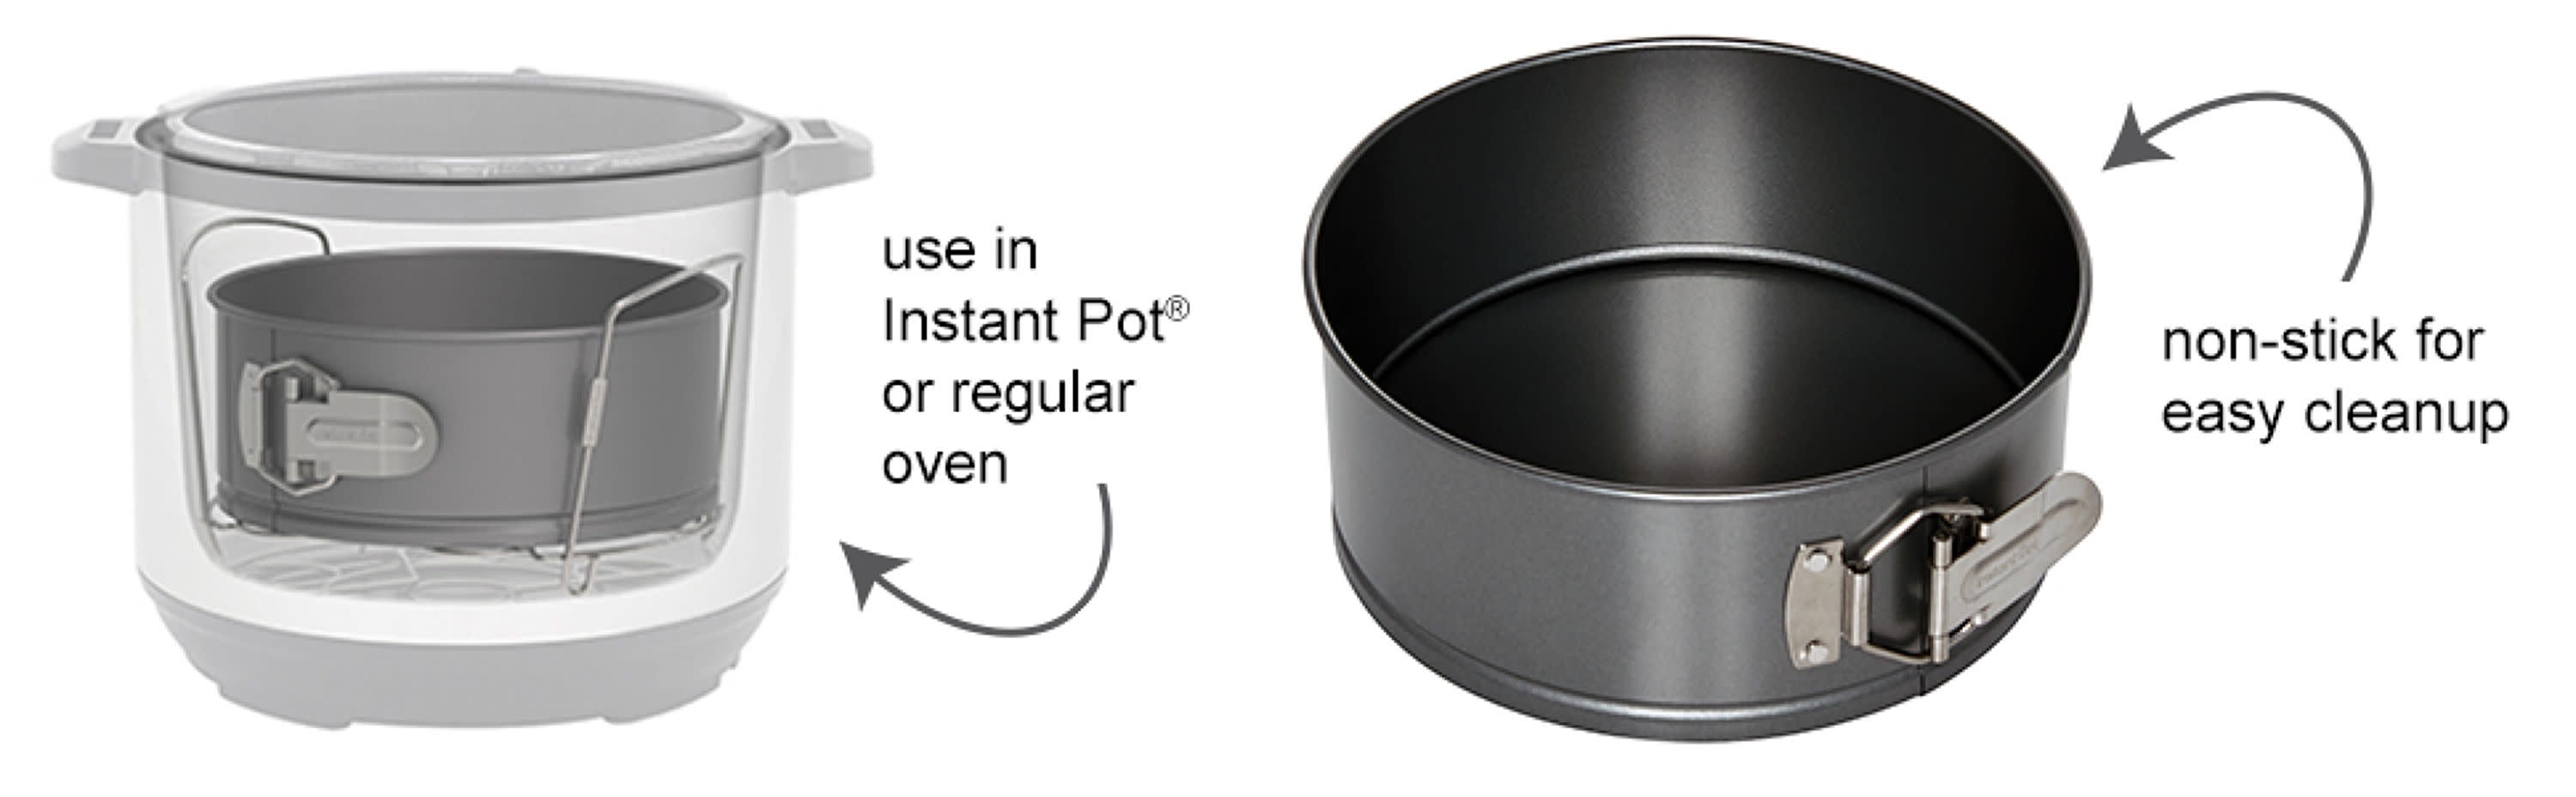 Instant Pot 7.5 In. Nonstick Springform Pan, Baking Pans, Household